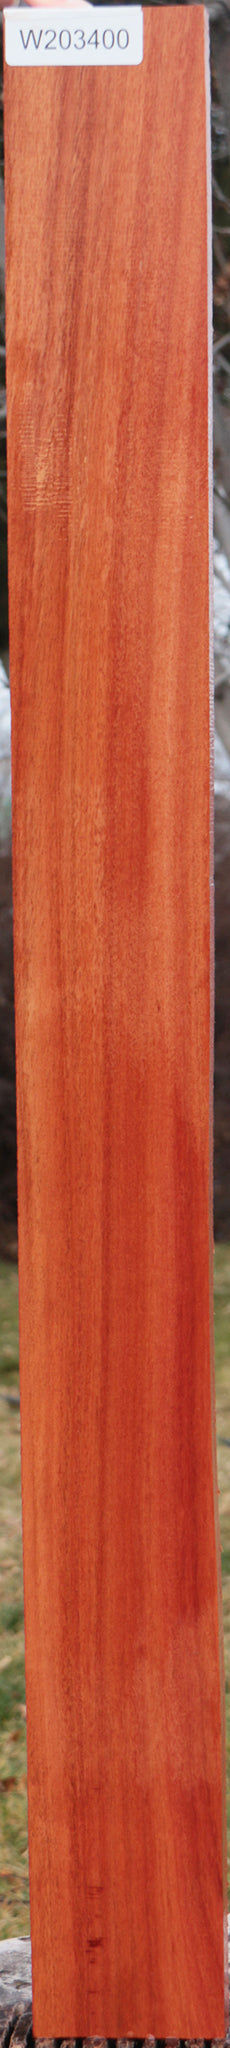 Red Ironbark Lumber